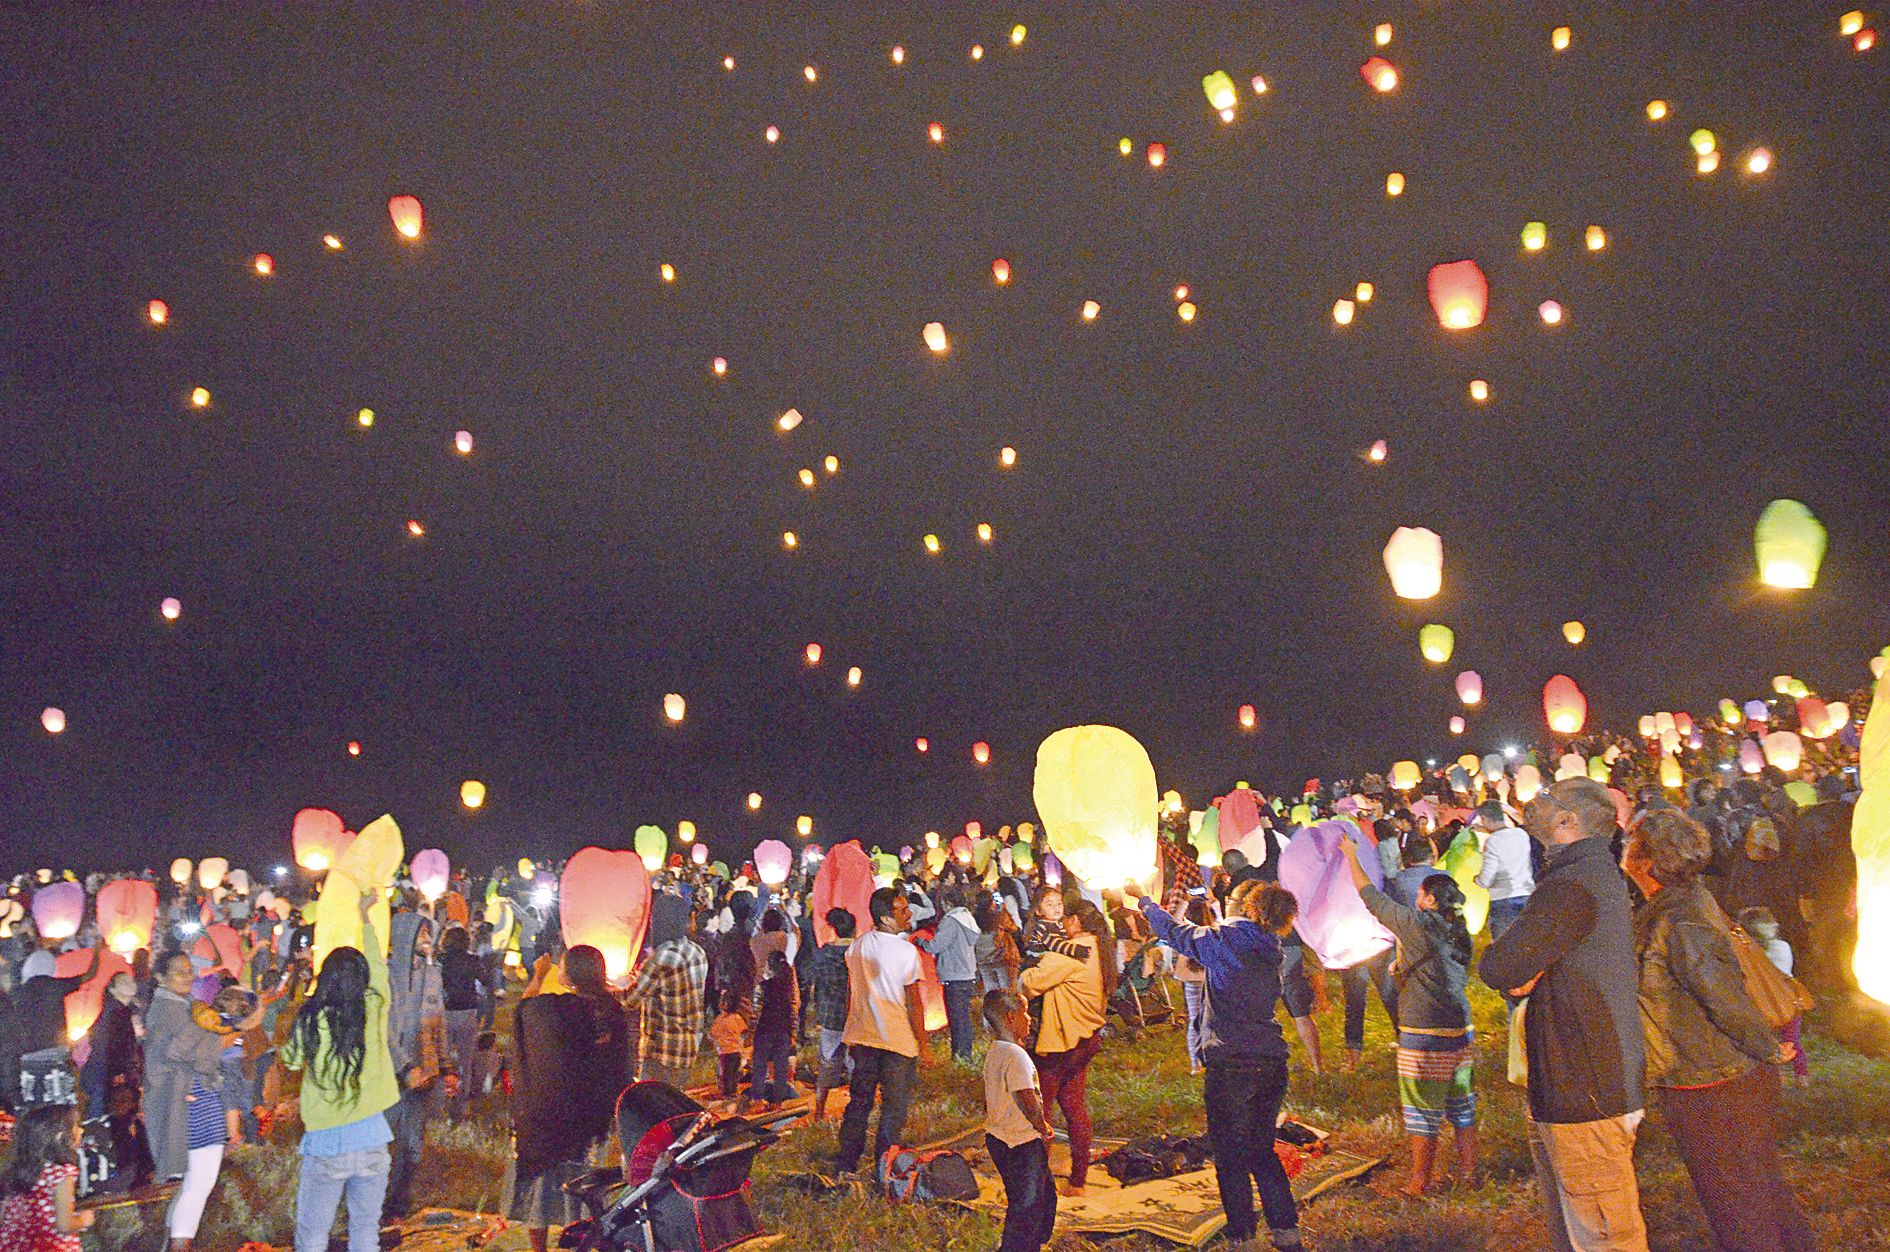 Point d’orgue de la soirée, le lâcher de lanternes célestes a illuminé le ciel de la ville, vers 20 heures. La soirée s’est ensuite poursuivie avec un concert du groupe australien Iluka, invité par la municipalité.